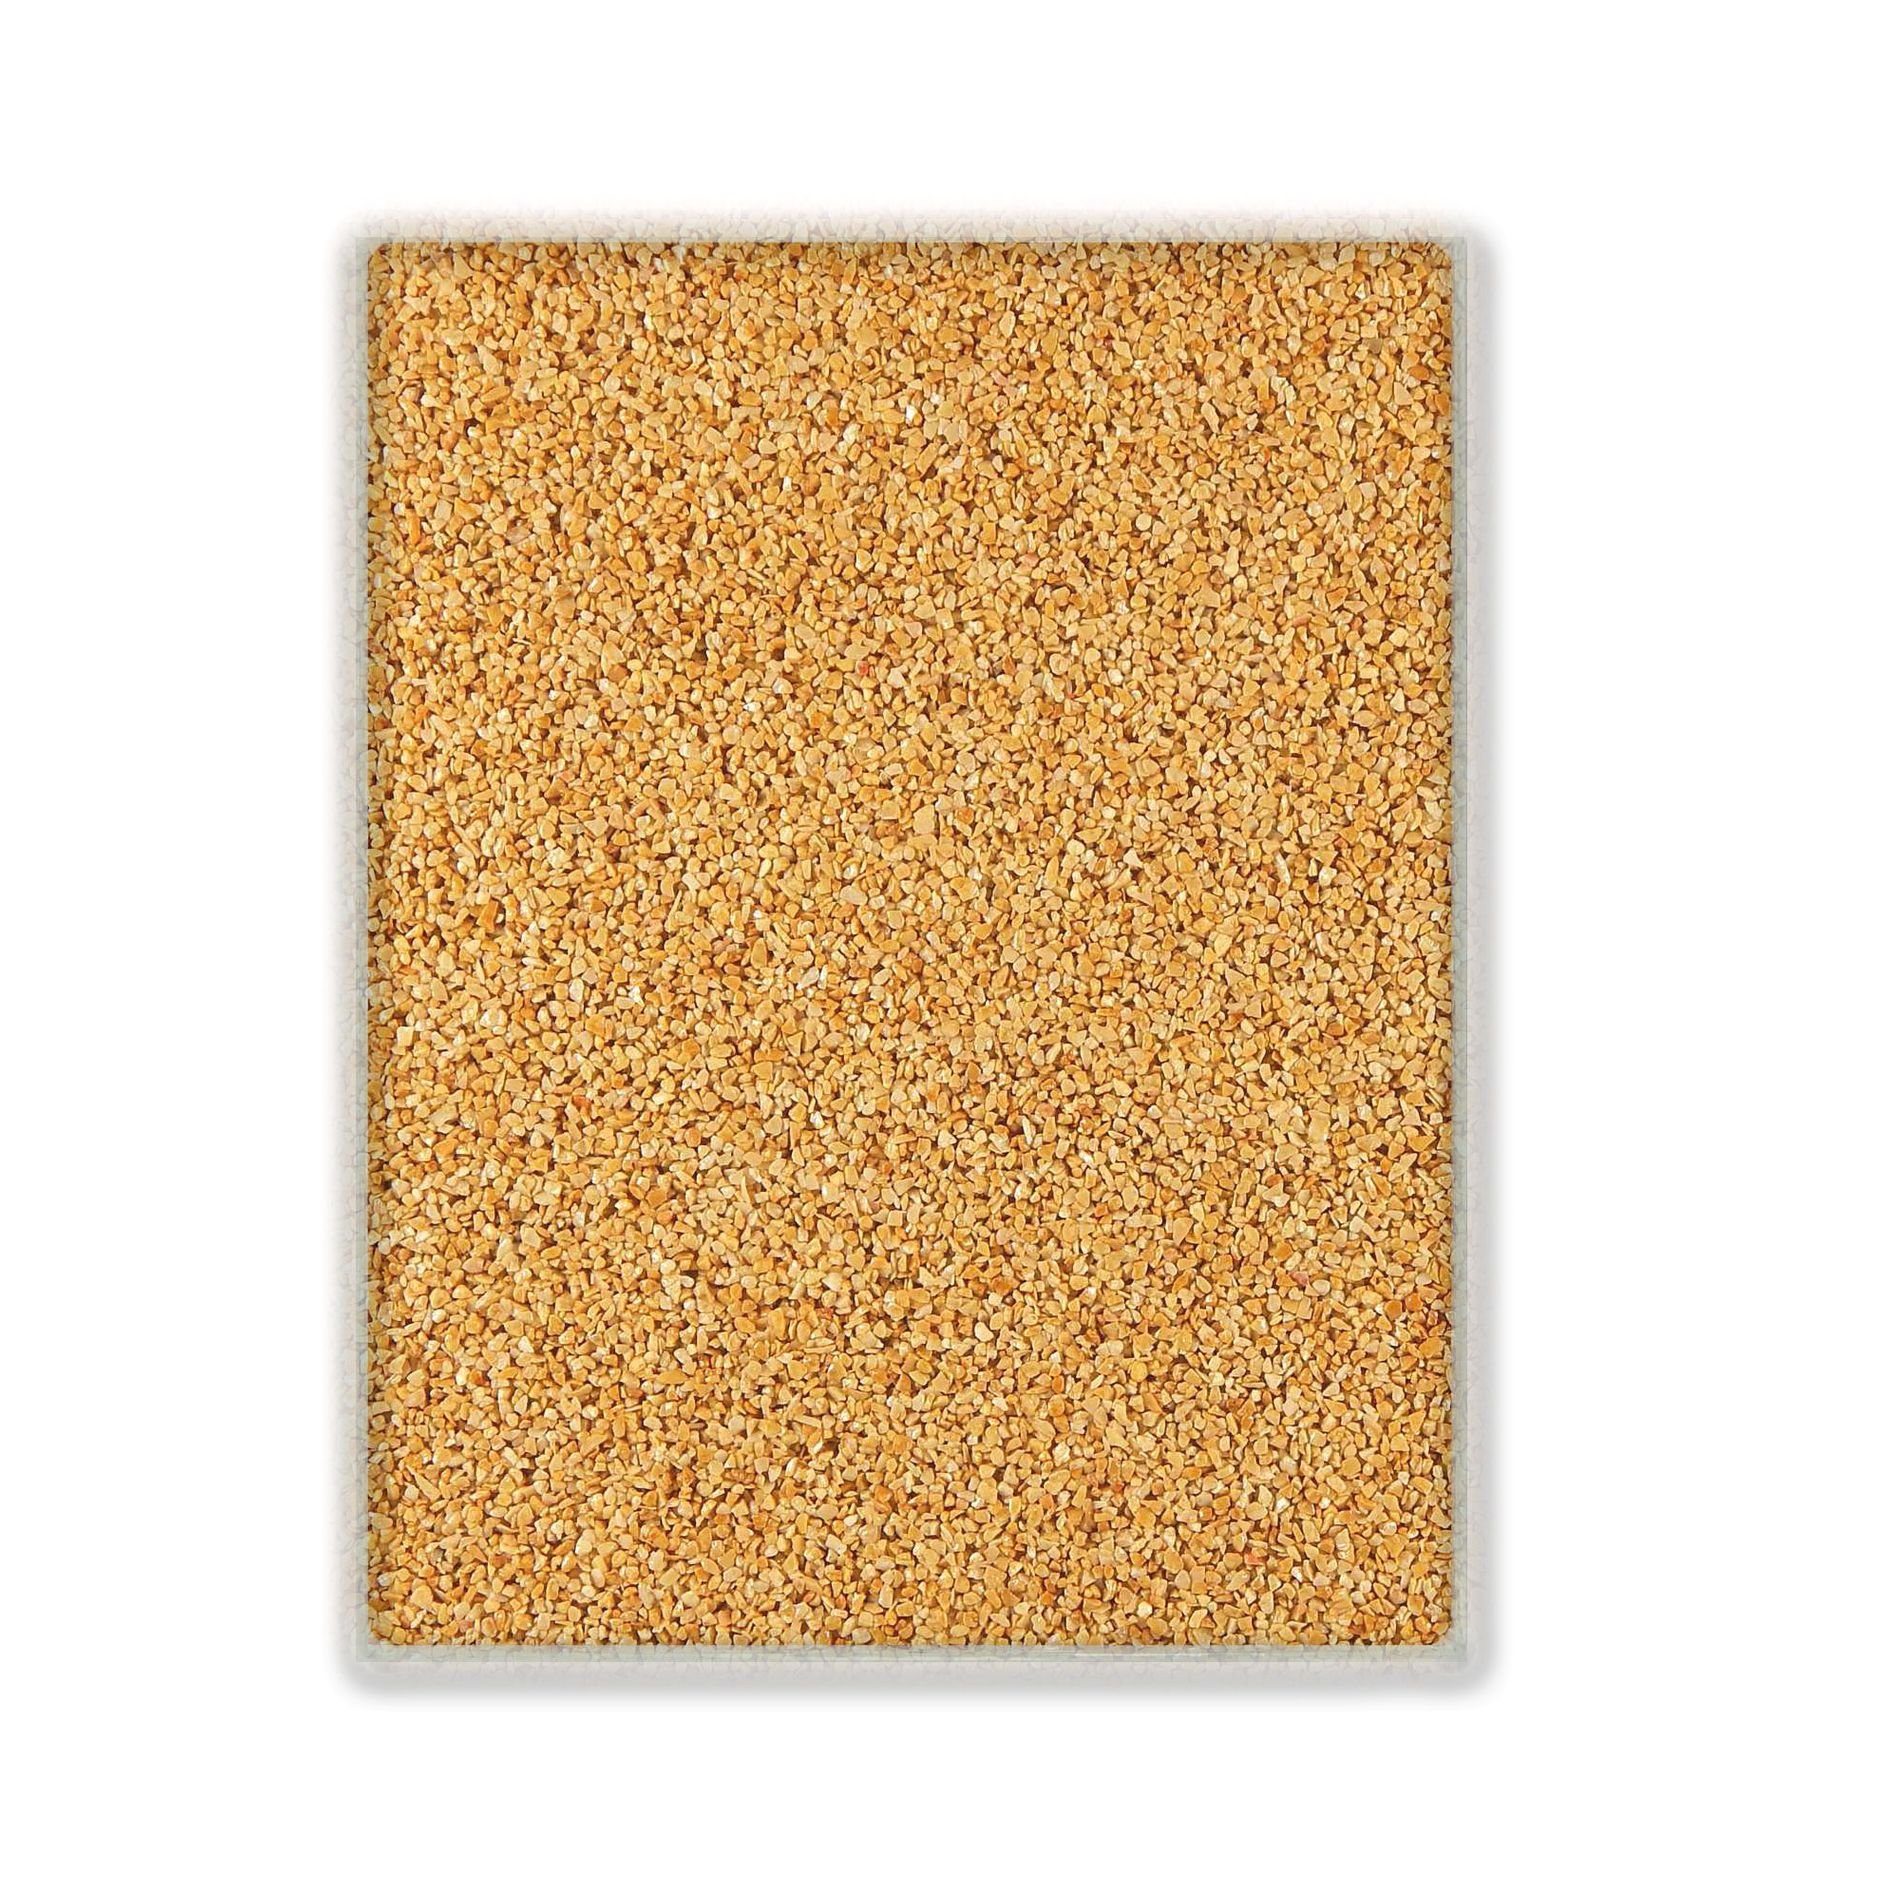 Terralith® Designboden Farbmuster Kompaktboden -giallo-, Originalware aus der Charge, die wir in diesem Moment im Abverkauf haben.